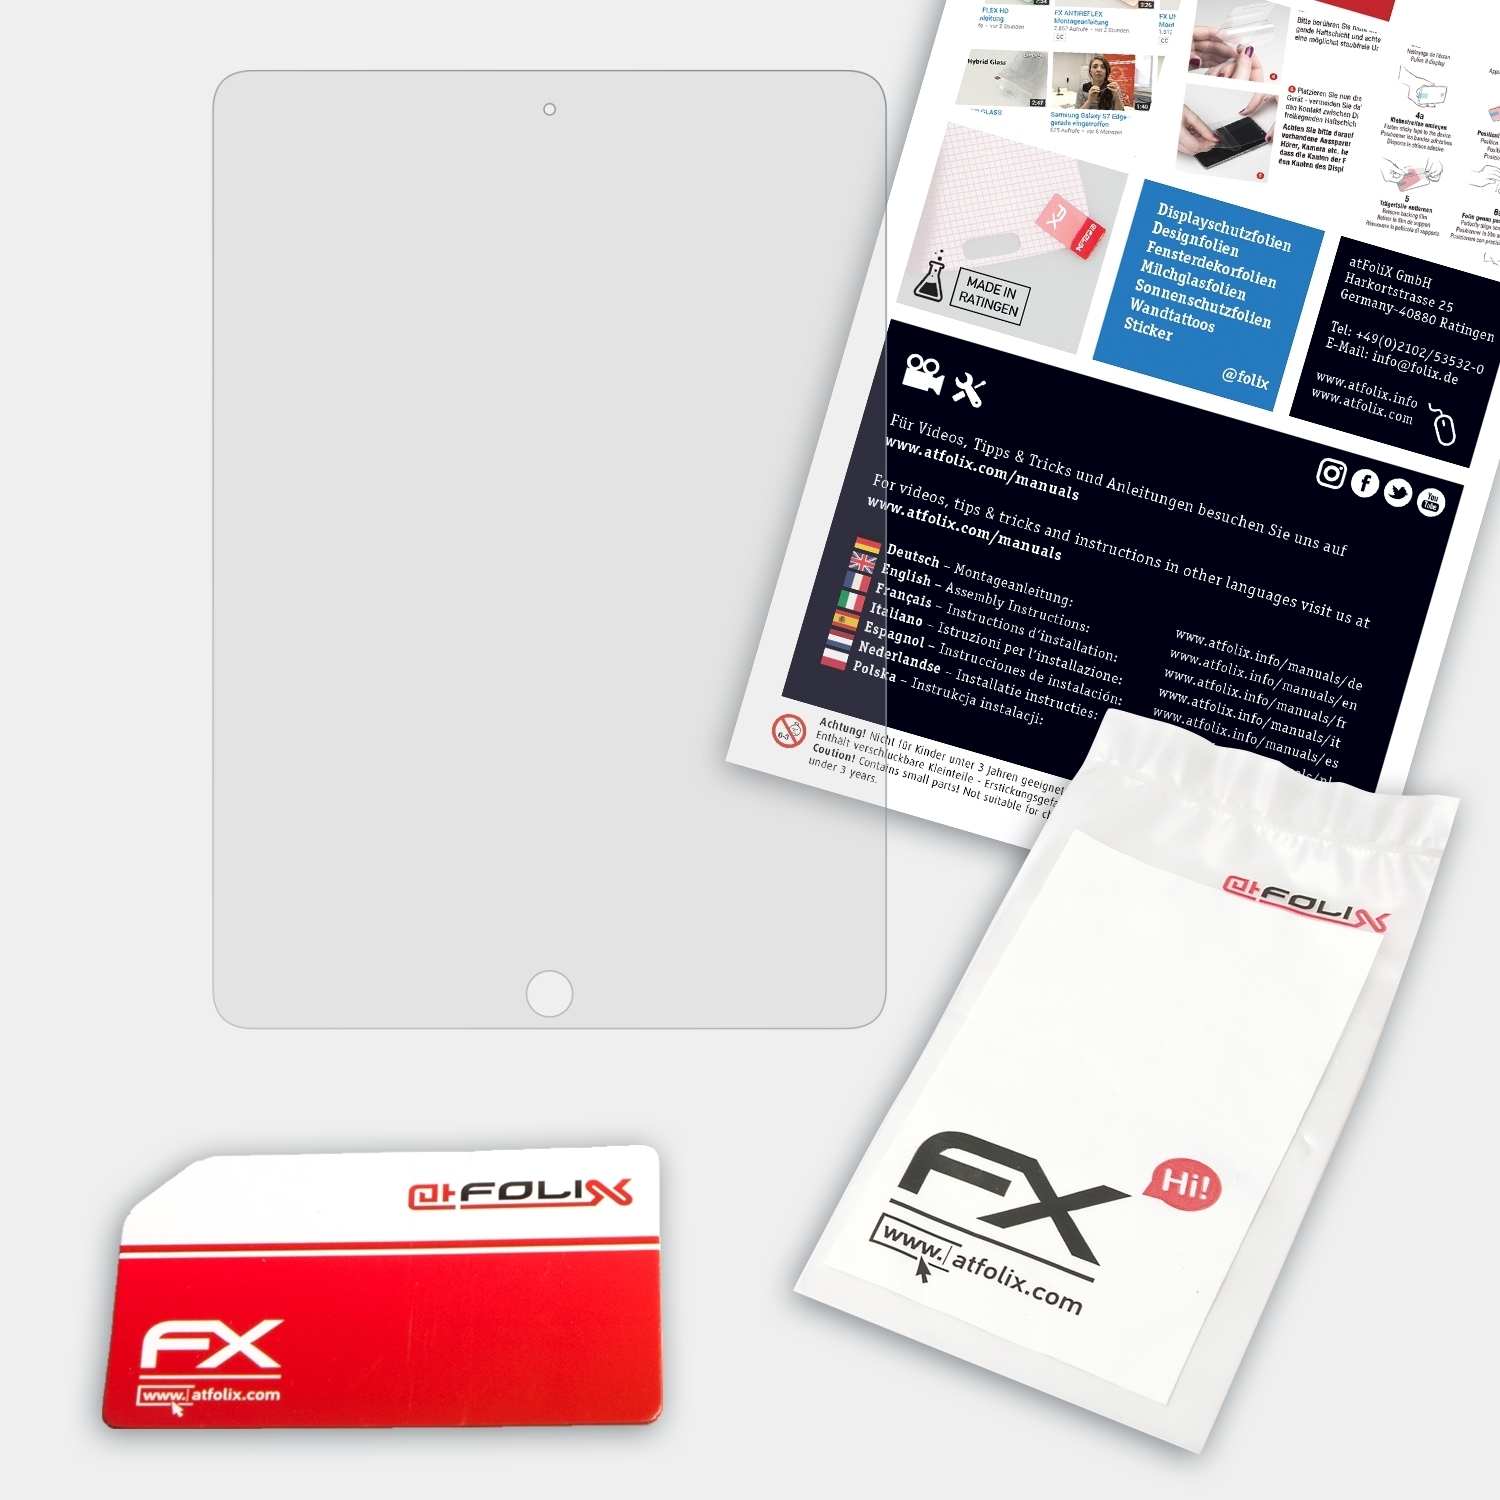 FX-Hybrid-Glass ATFOLIX Air Apple (2013)) Schutzglas(für iPad